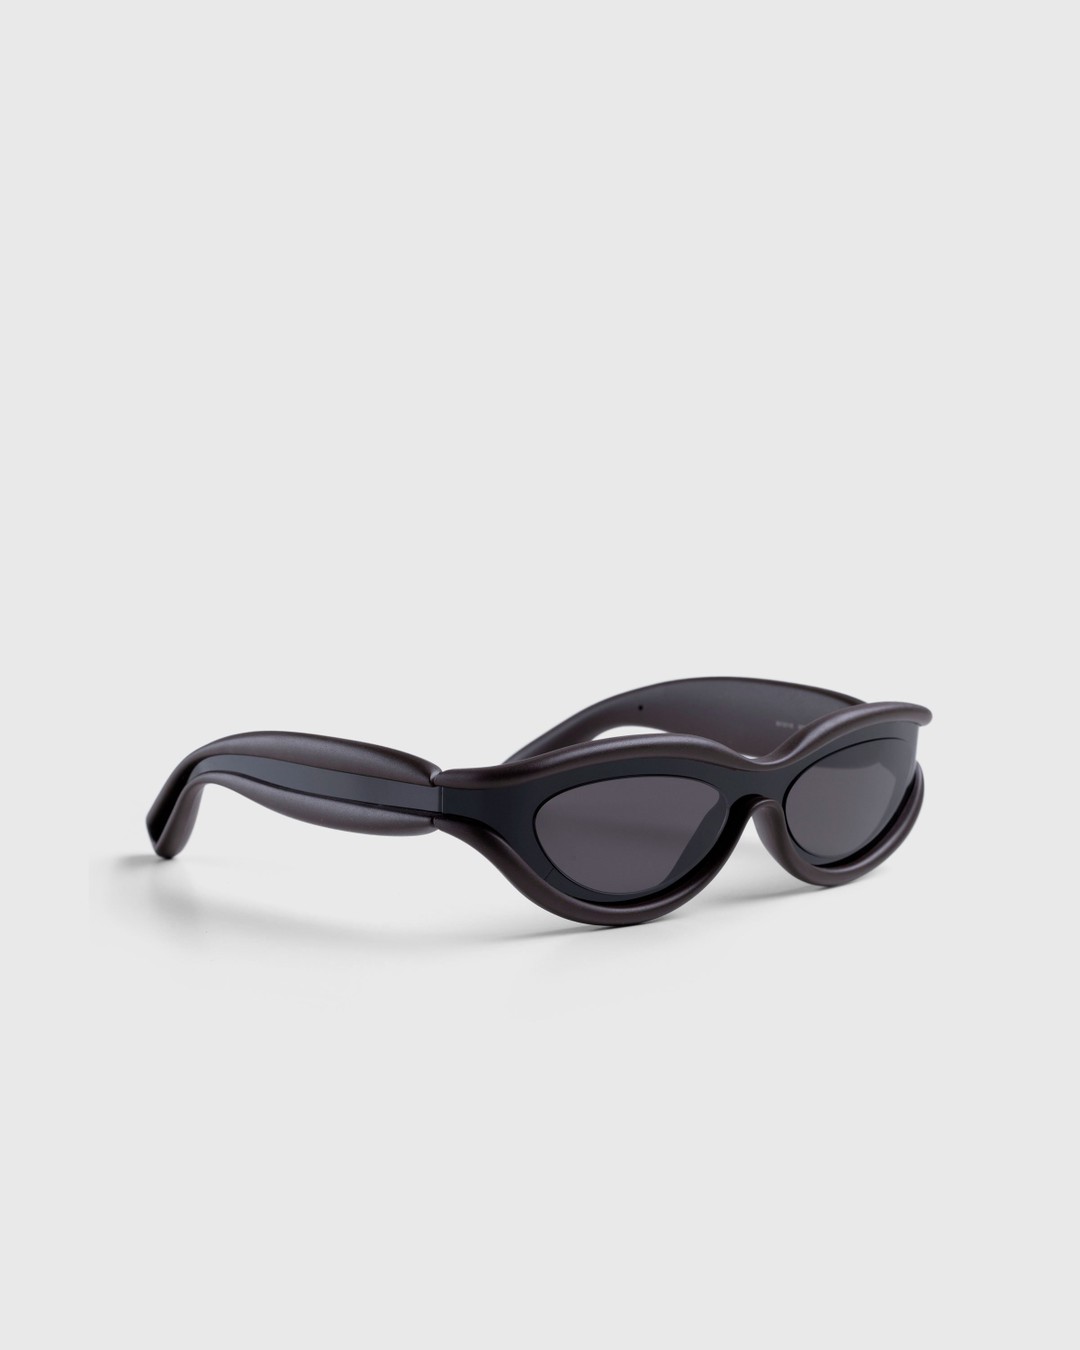 Bottega Veneta – Unapologetic Sunglasses Black - Eyewear - Black - Image 2